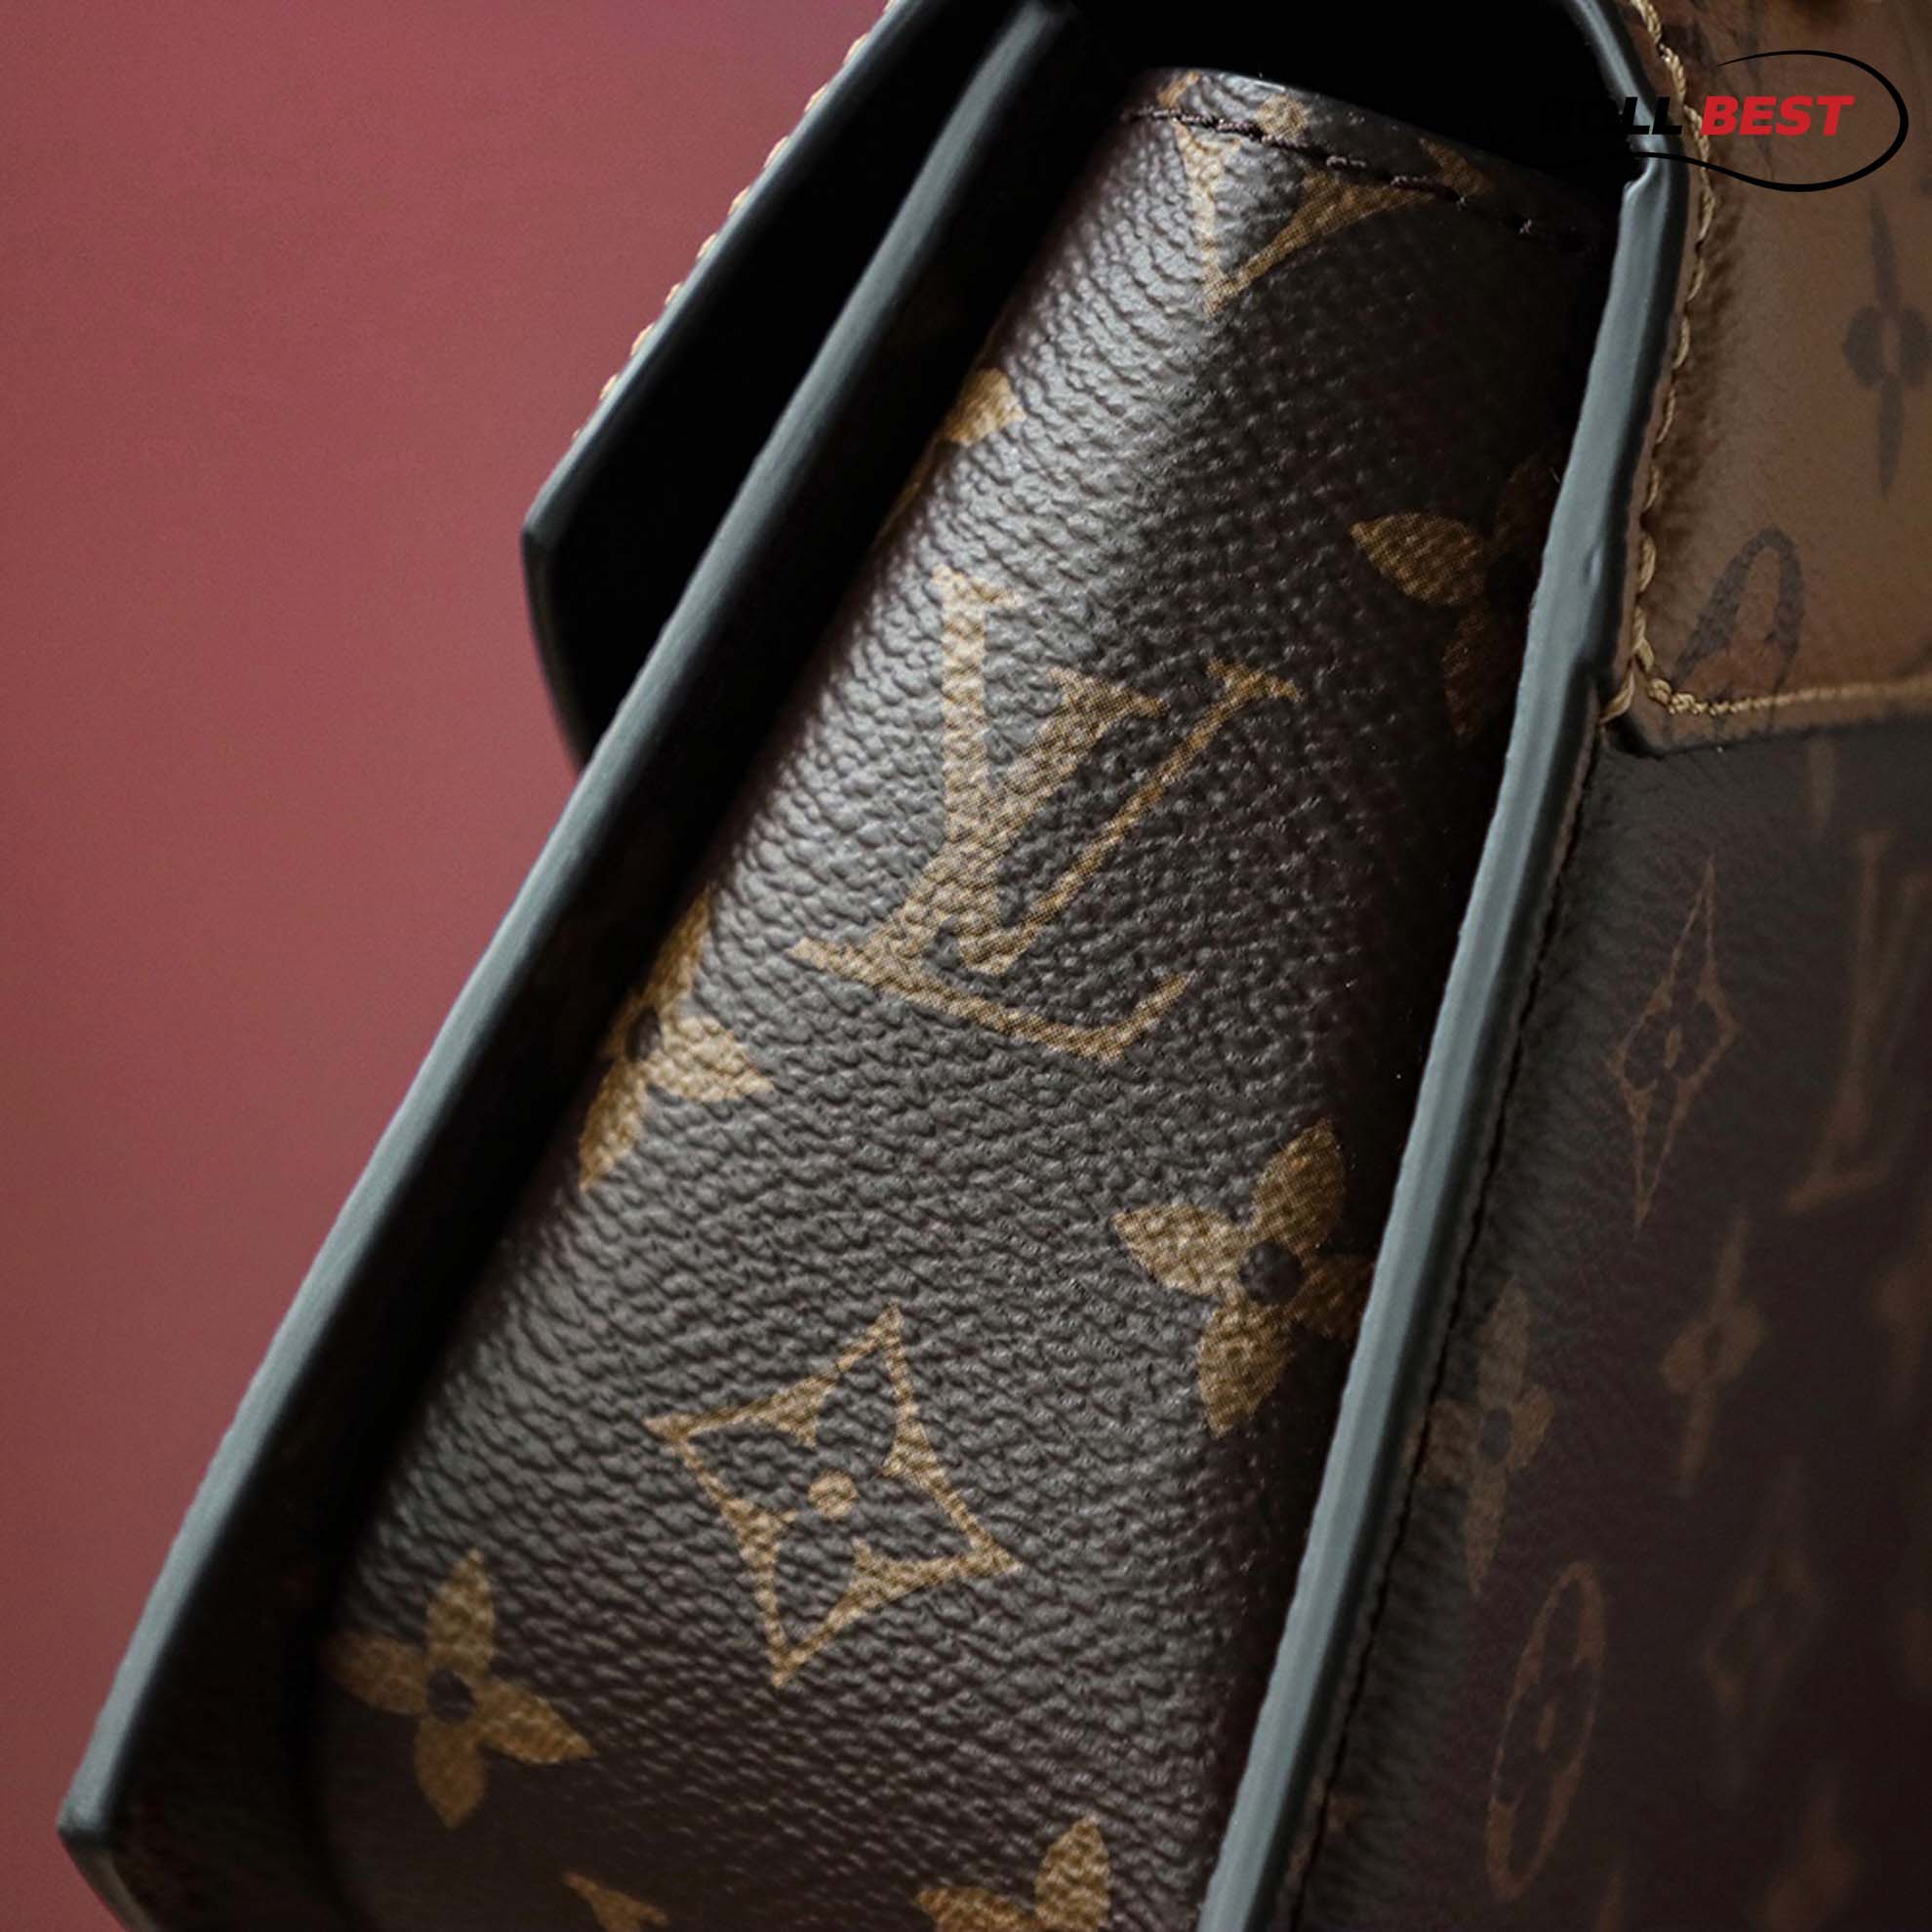 Túi Louis Vuitton Tilsitt Bag ‘Brown’